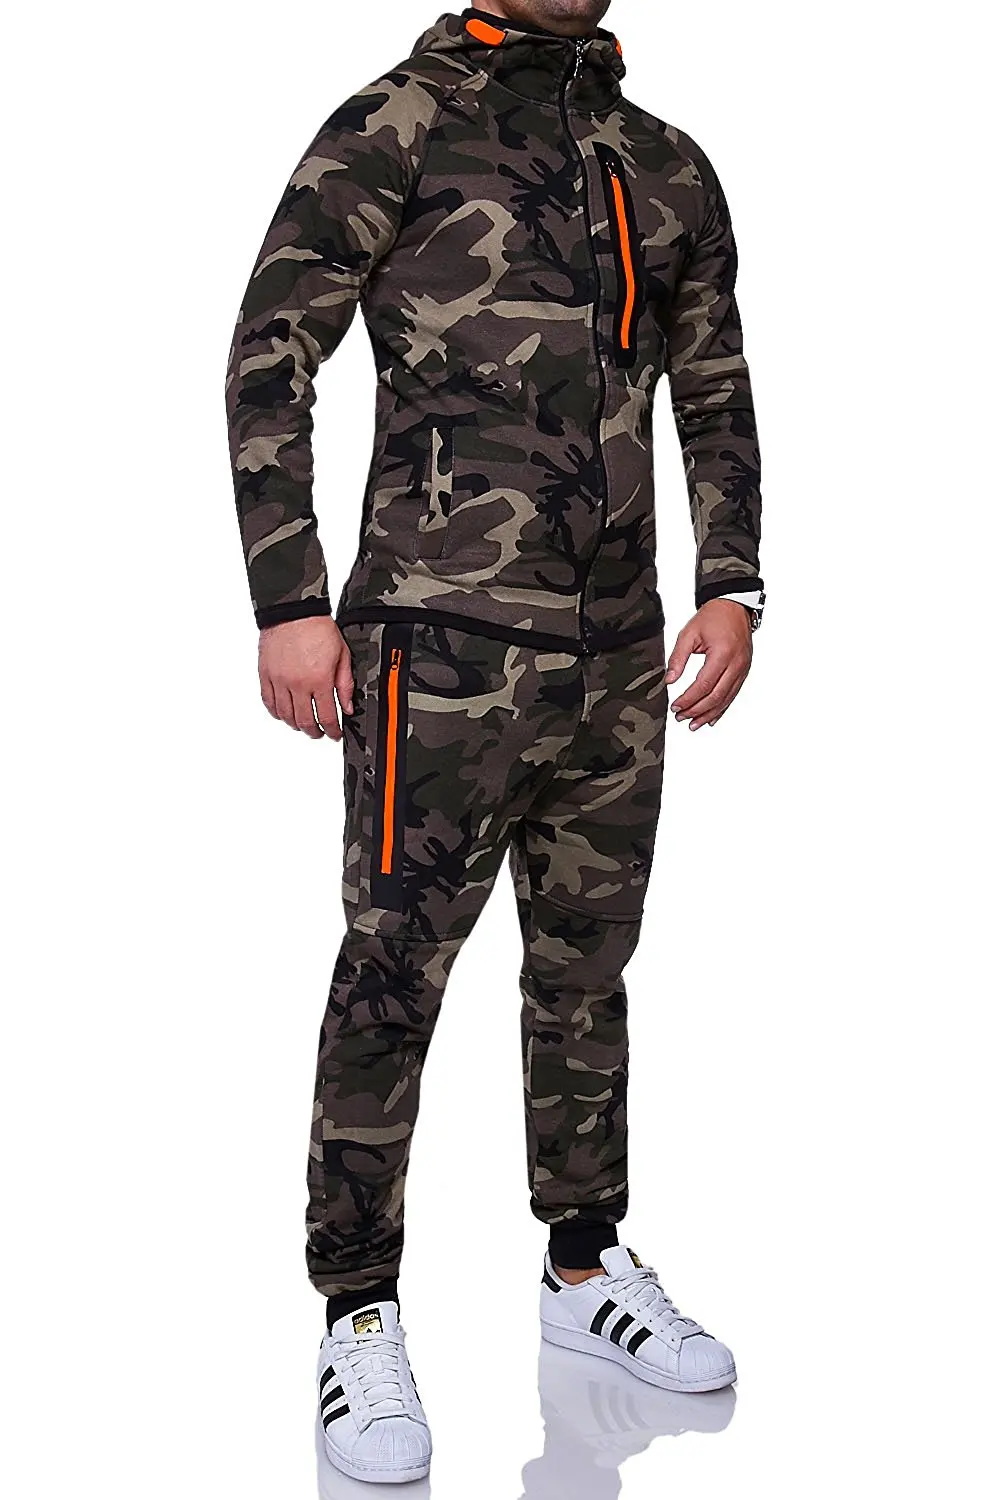 ZOGAA мужские спортивные костюмы камуфляжная куртка с камуфляжным принтом 2 предмета одежды спортивная толстовка с капюшоном и штаны спортивные костюмы военные мужские